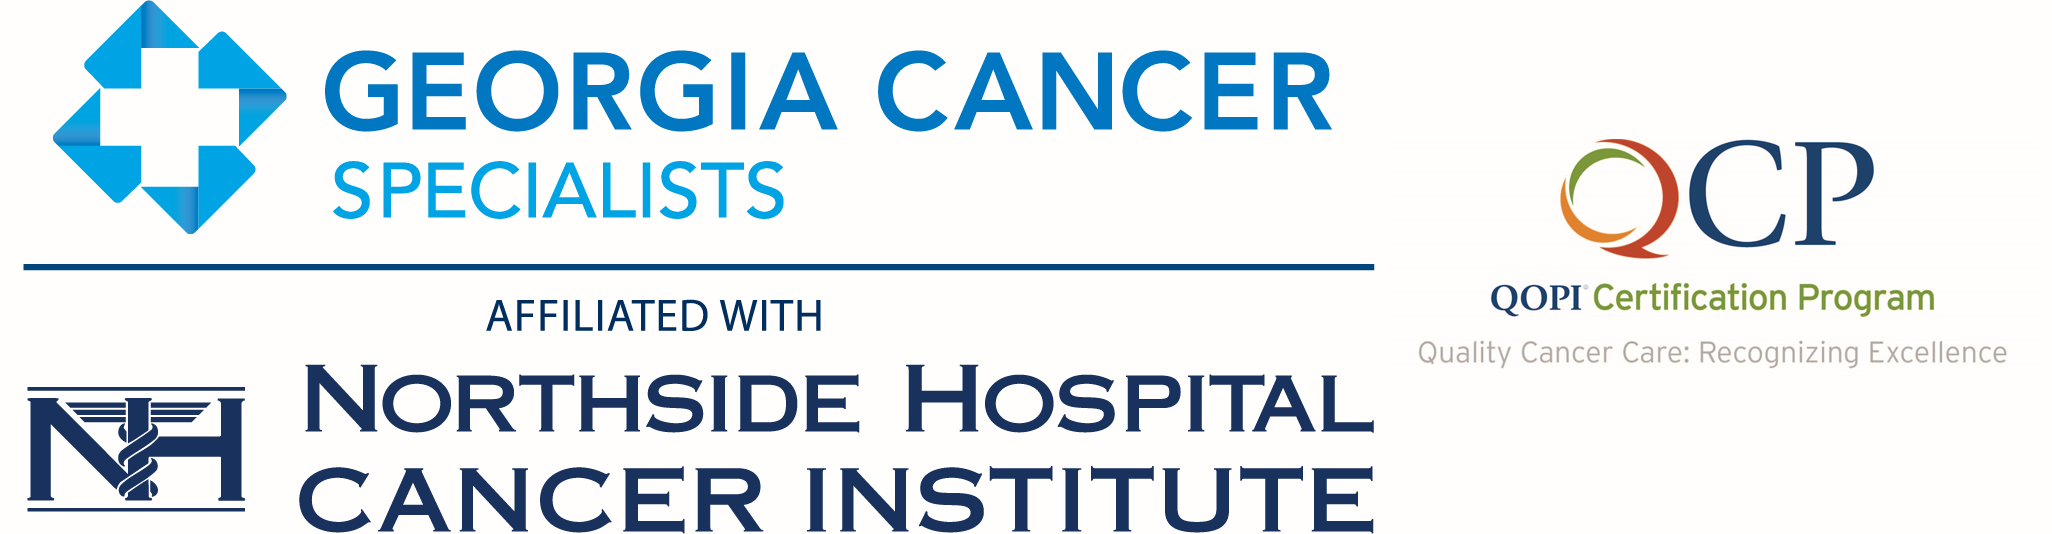 GA Cancer logo